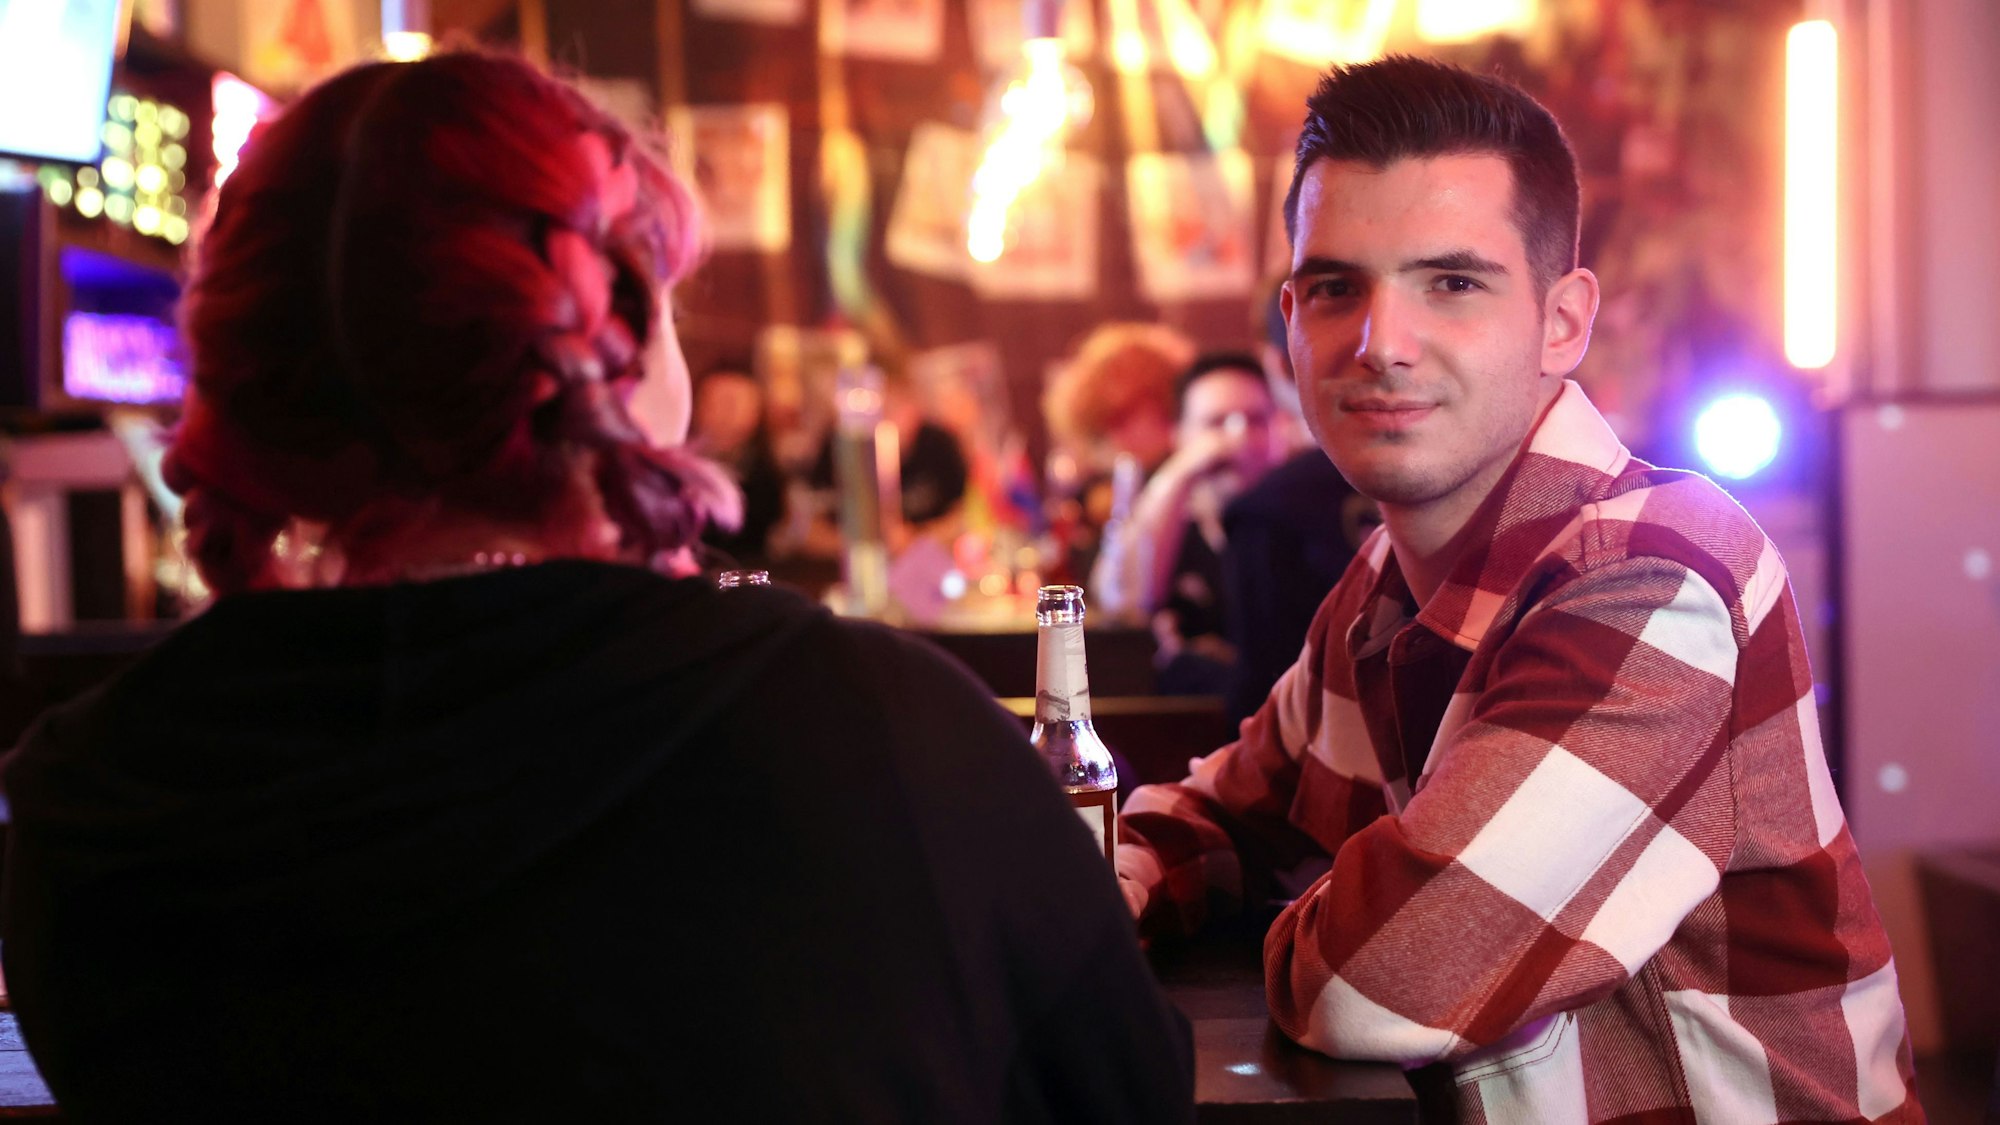 Zwei queere Jugendliche an der Bar des Kölner Jugendzentrums „Anyway“. Links mit dem Rücken zur Kamera sitzt Kitti, mit pinken Zöpfen. Daneben sitzt David im karierten Hemd und schaut in die Kamera.